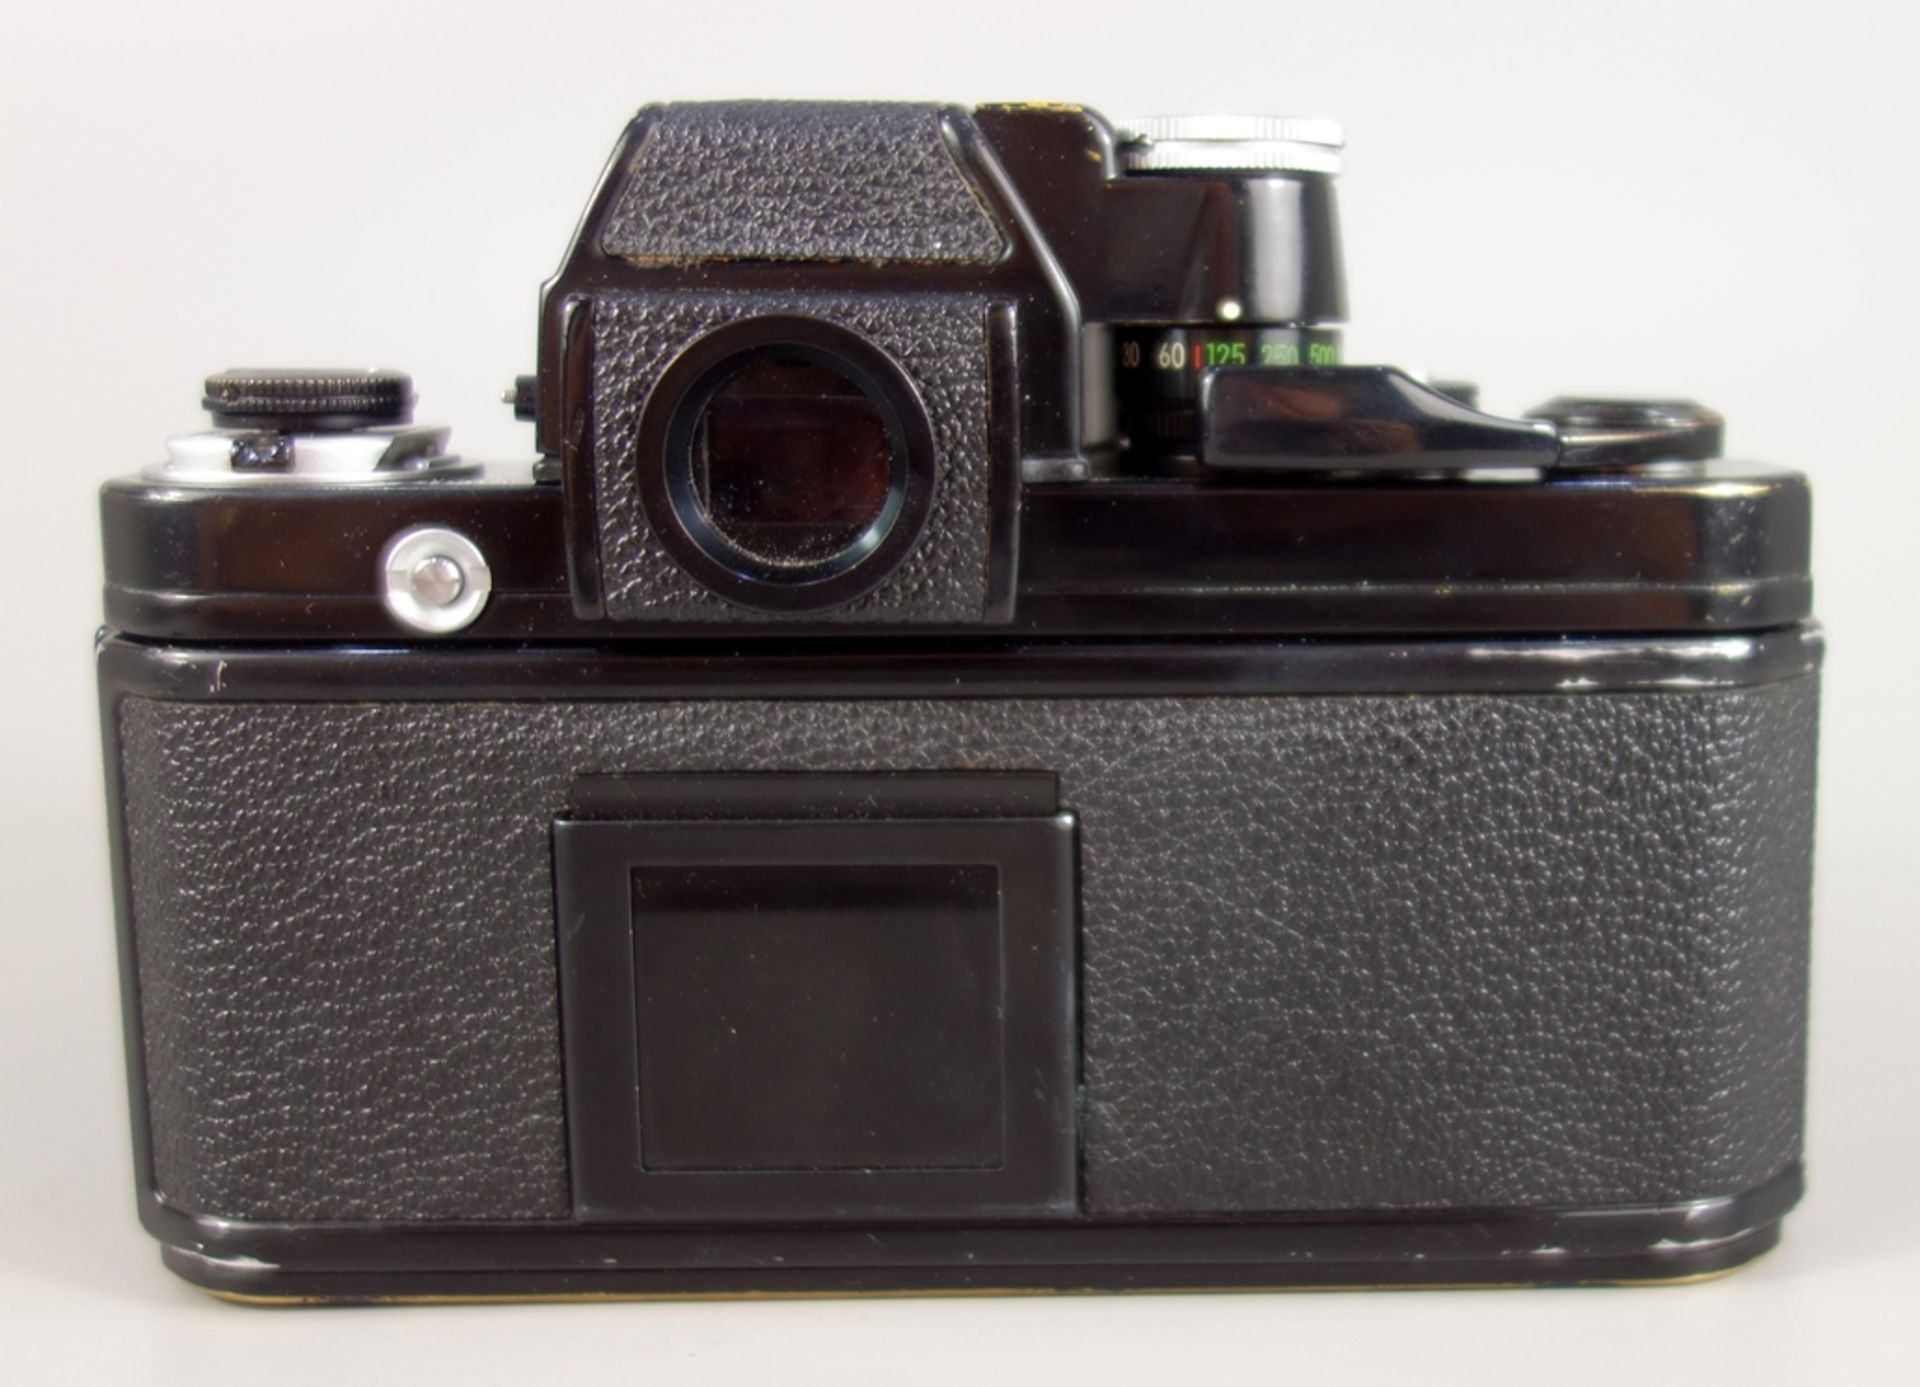 Nikon F2 Photomic, Spiegelreflexkamera, schwarz, 1970er Jahre, Serien-Nr. 7240495, mit Objektiv - Bild 3 aus 5